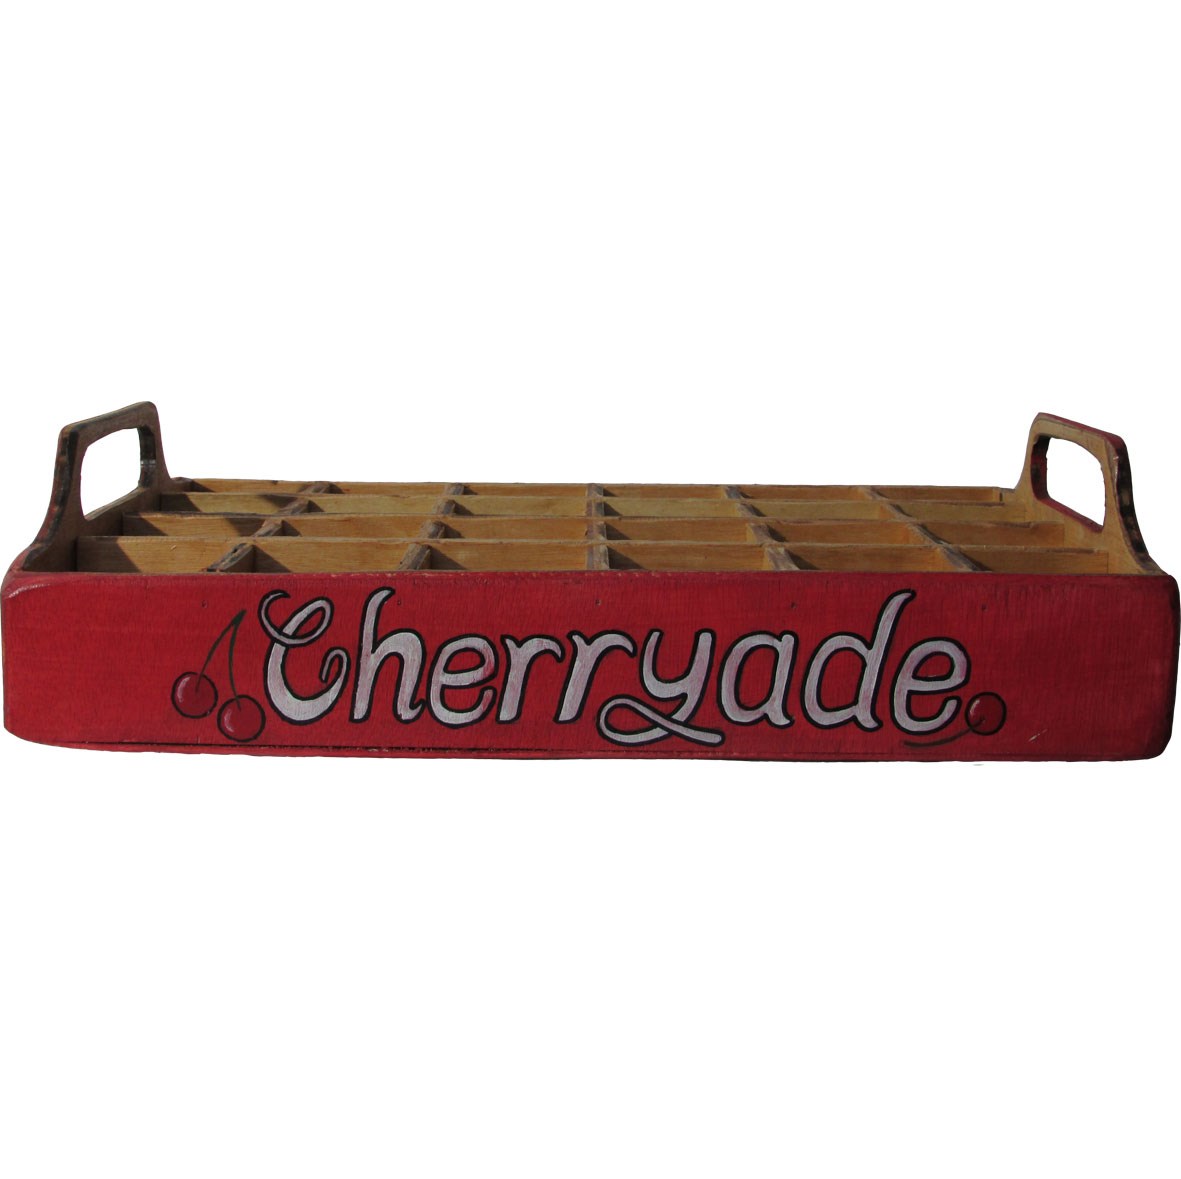 Cherryade Bottle Case with handles